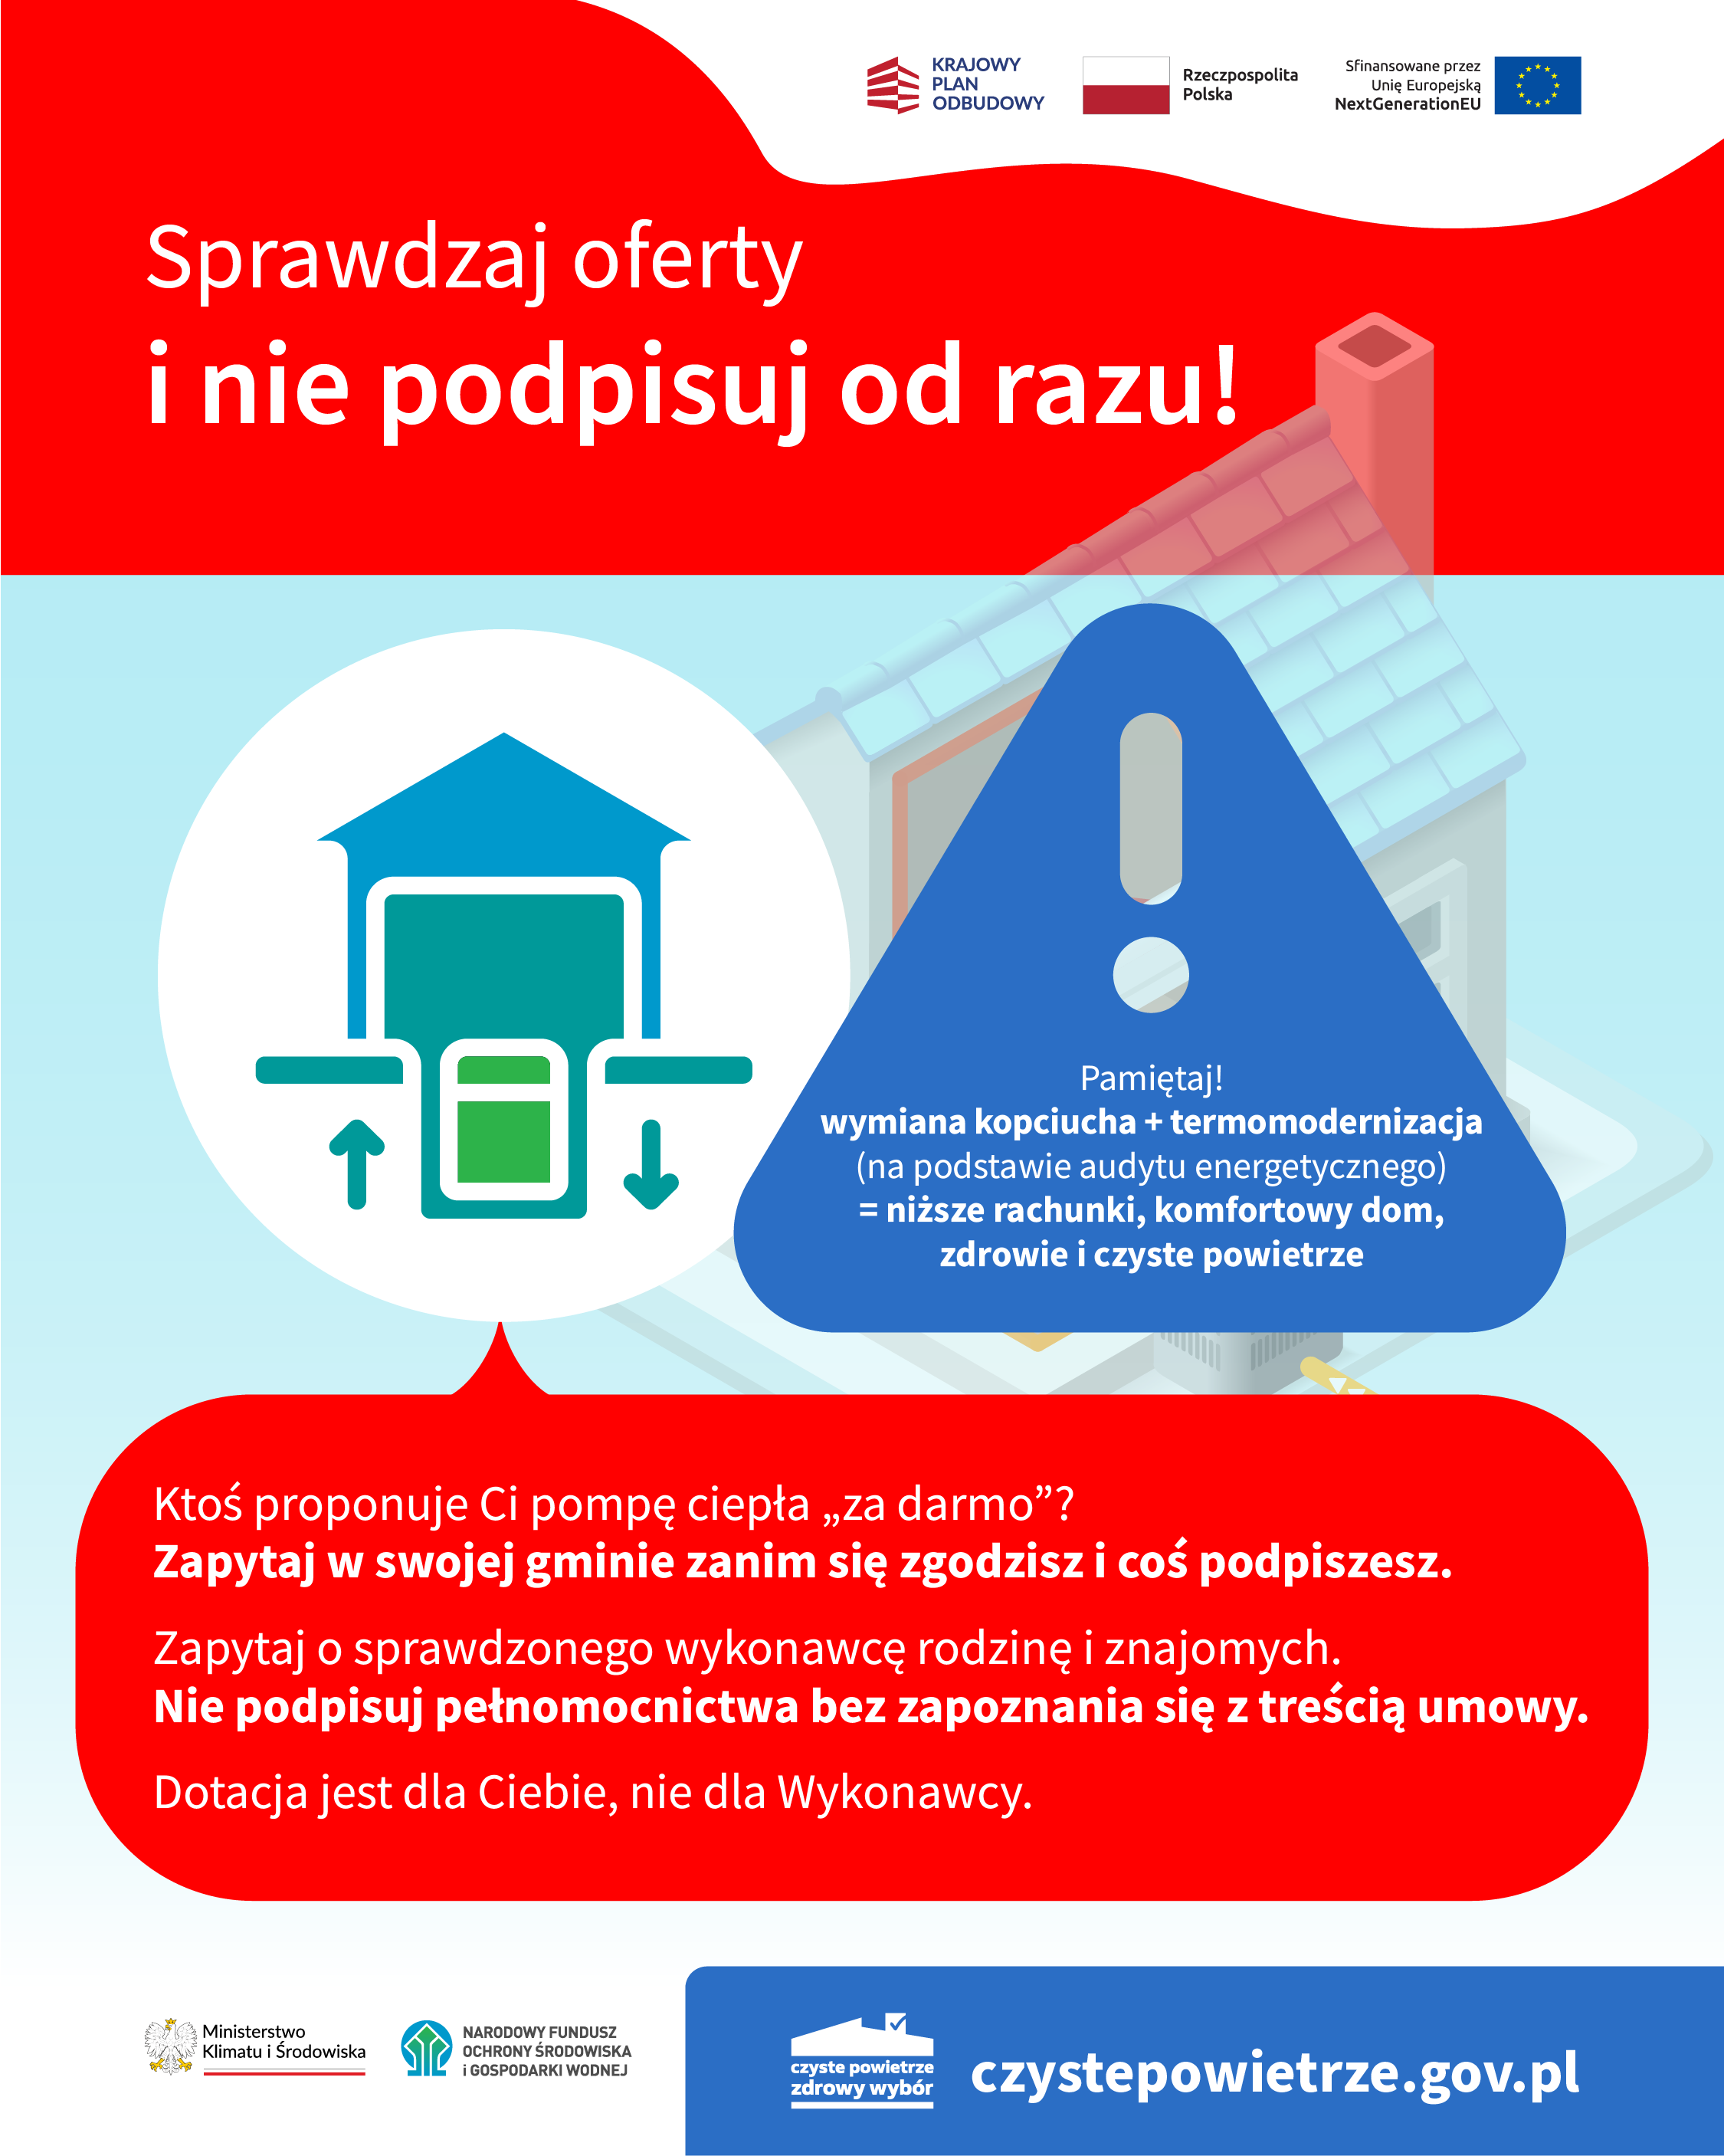 Grafika informacyjna z przewodnikiem "Sprawdzaj oferty i nie podpisuj od razu". Zawiera ikony okien, baterii i domu, wskazówki dotyczące termomodernizacji i link do czystepowietrze.gov.pl.